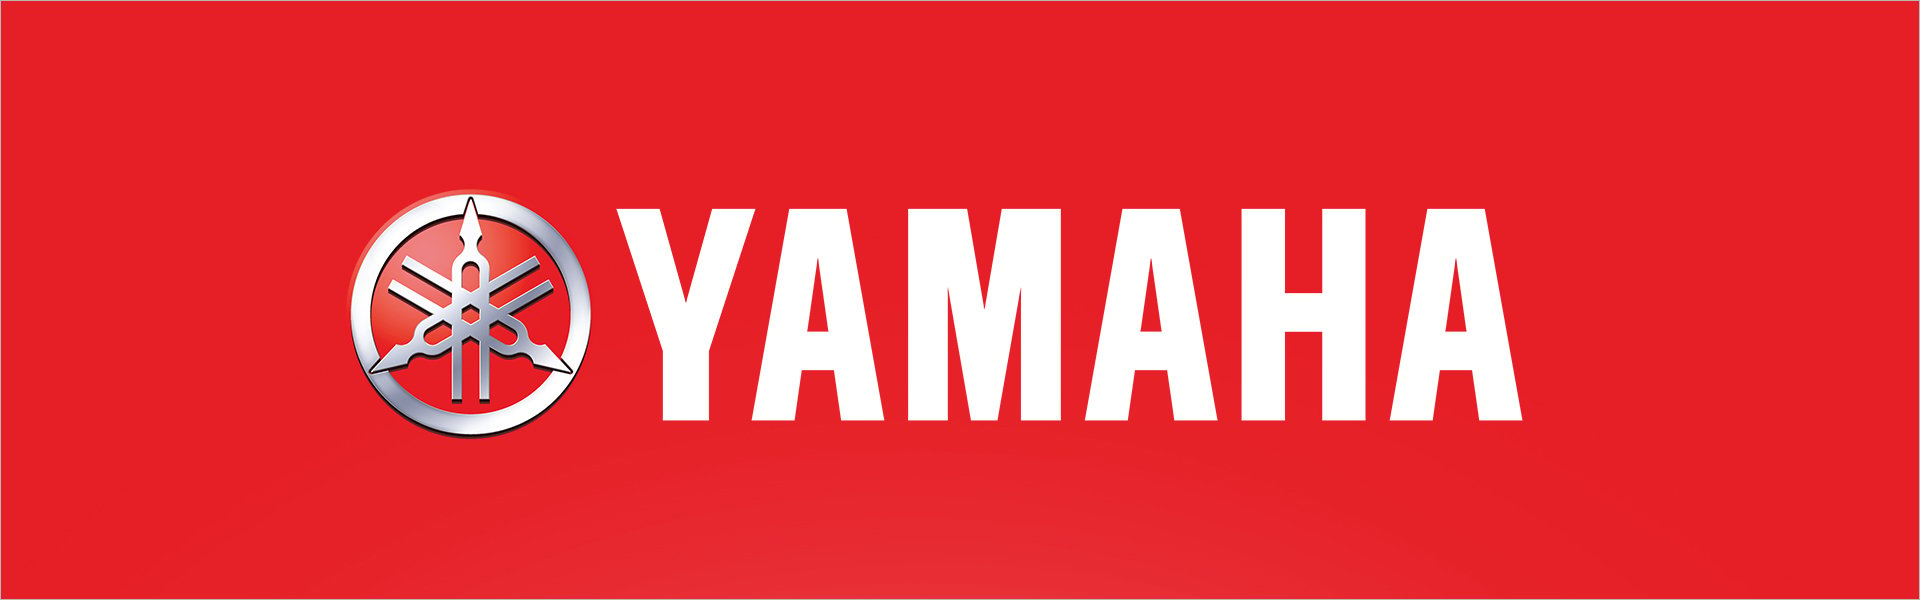 Yamaha MG06 Yamaha